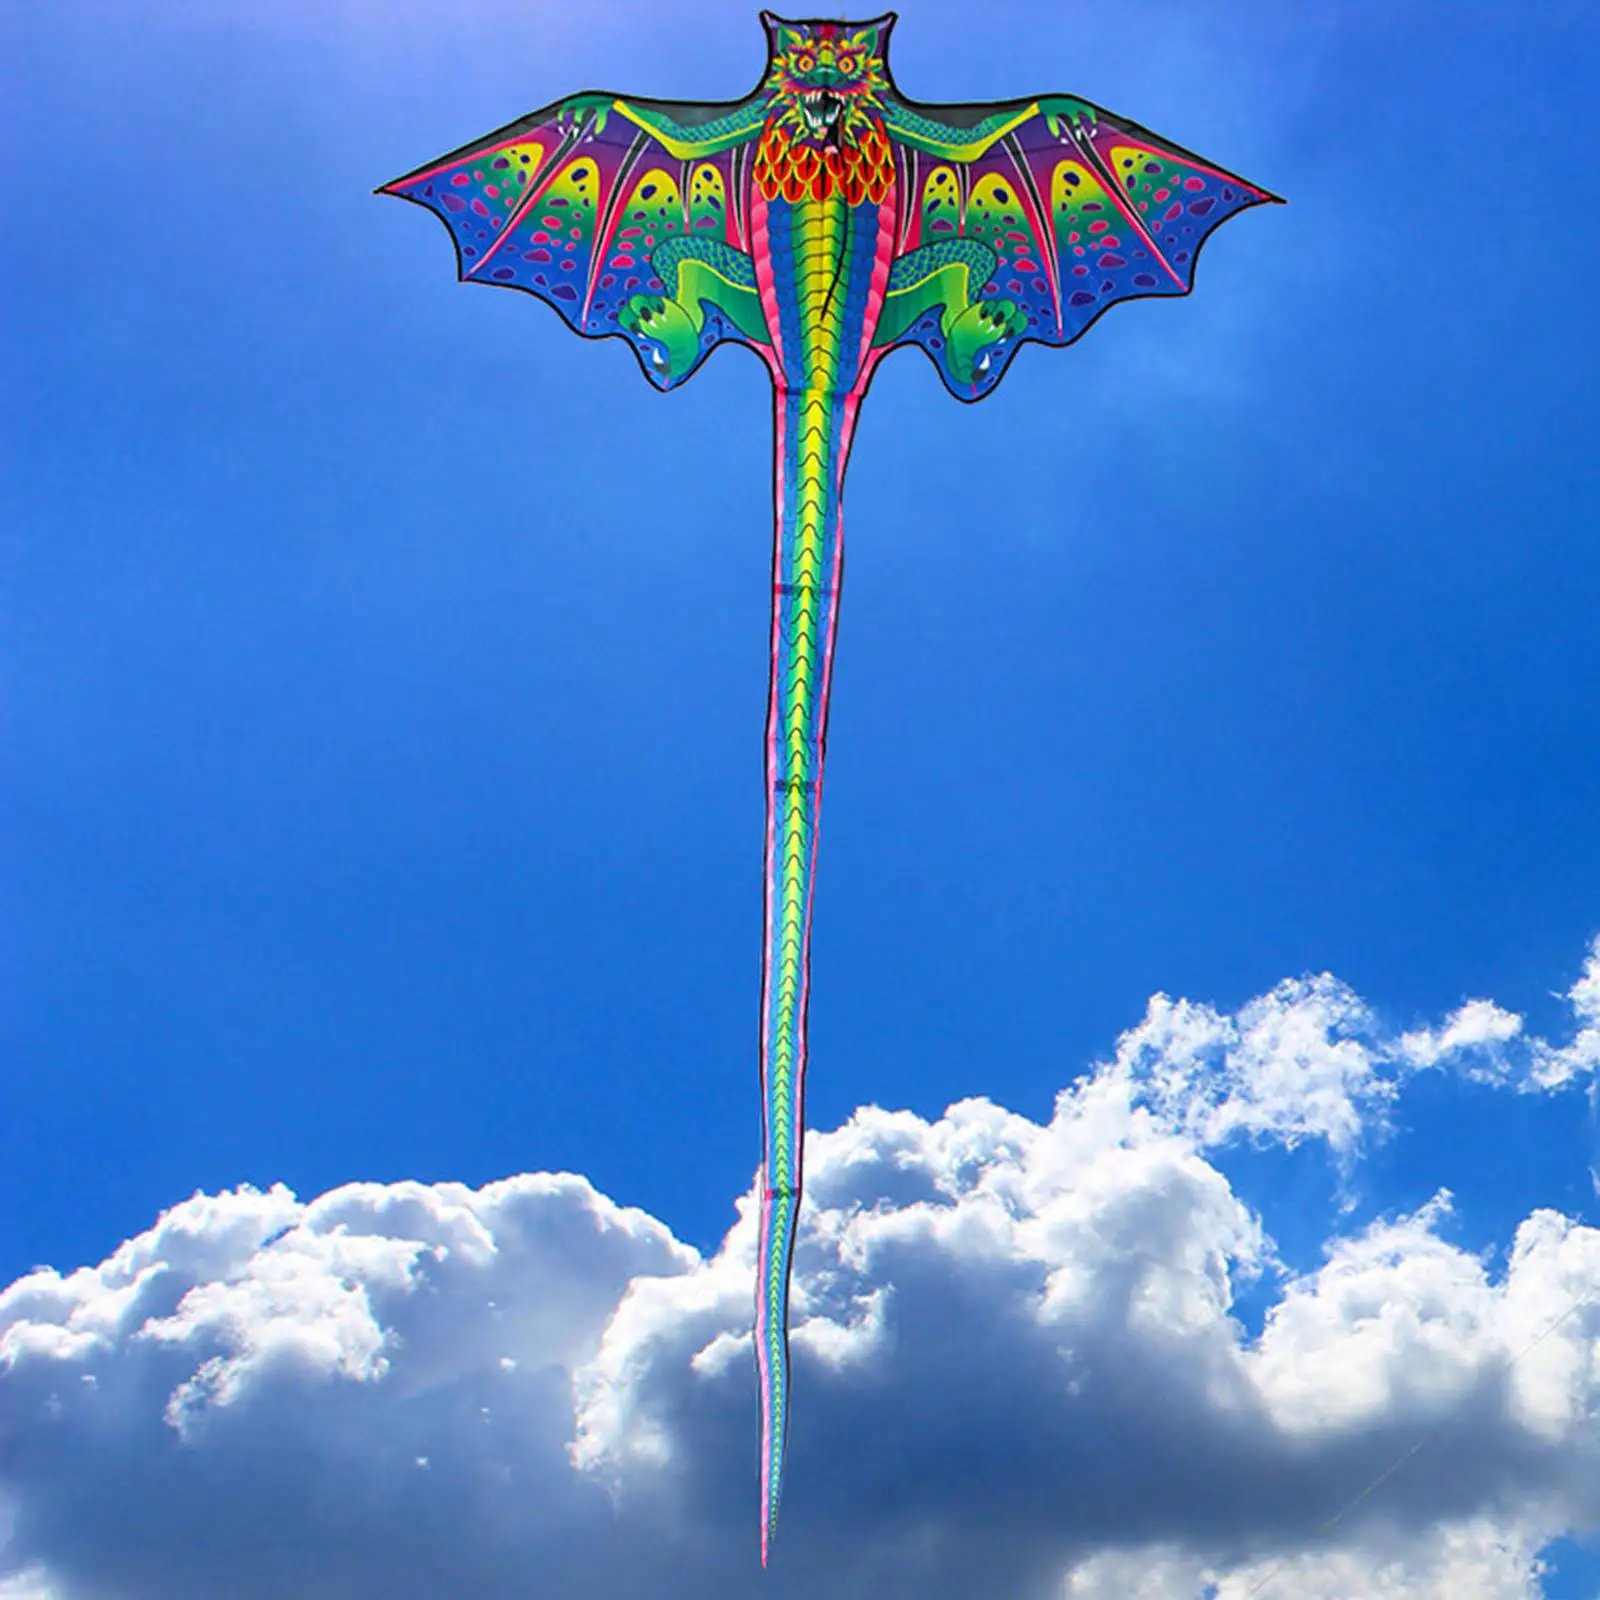 3D Dragon Kite For Kids Outdoor Fun Sports Beach Toys Nylon Kite Toys Fly Children Kite Line Kids Gift Family Outdoor Sports